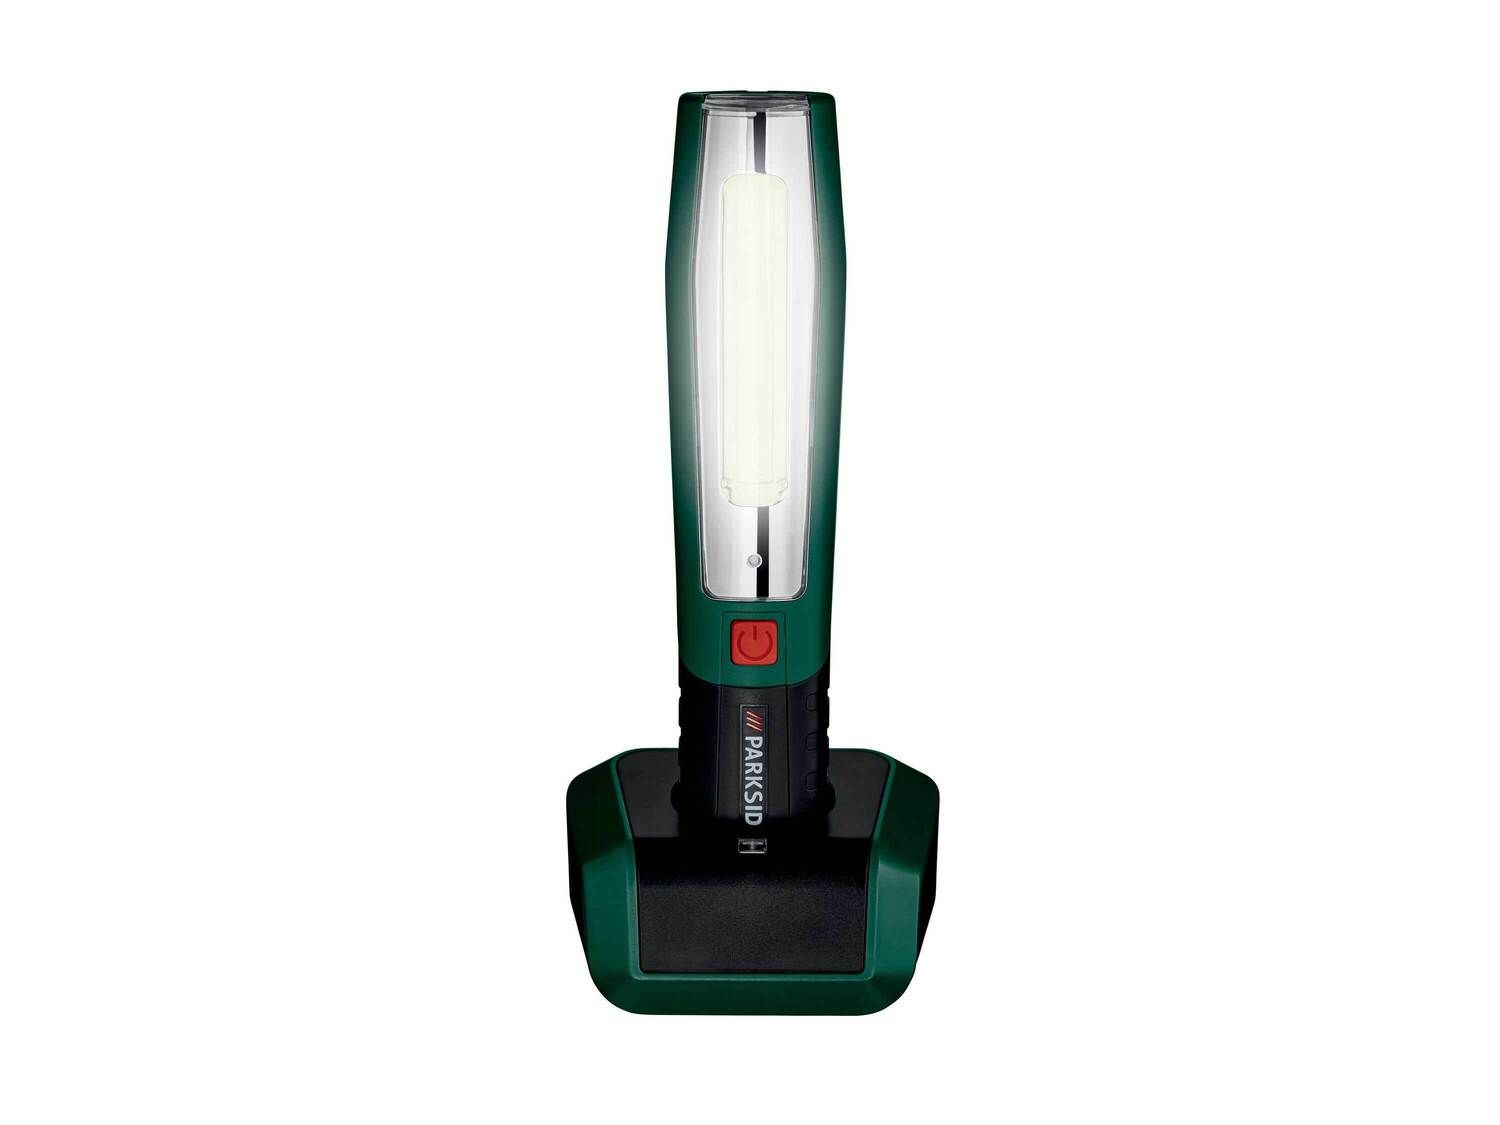 Akumulatorowa lampa LED Parkside, cena 79,90 PLN 
- mocny akumulator litowo-jonowy ...